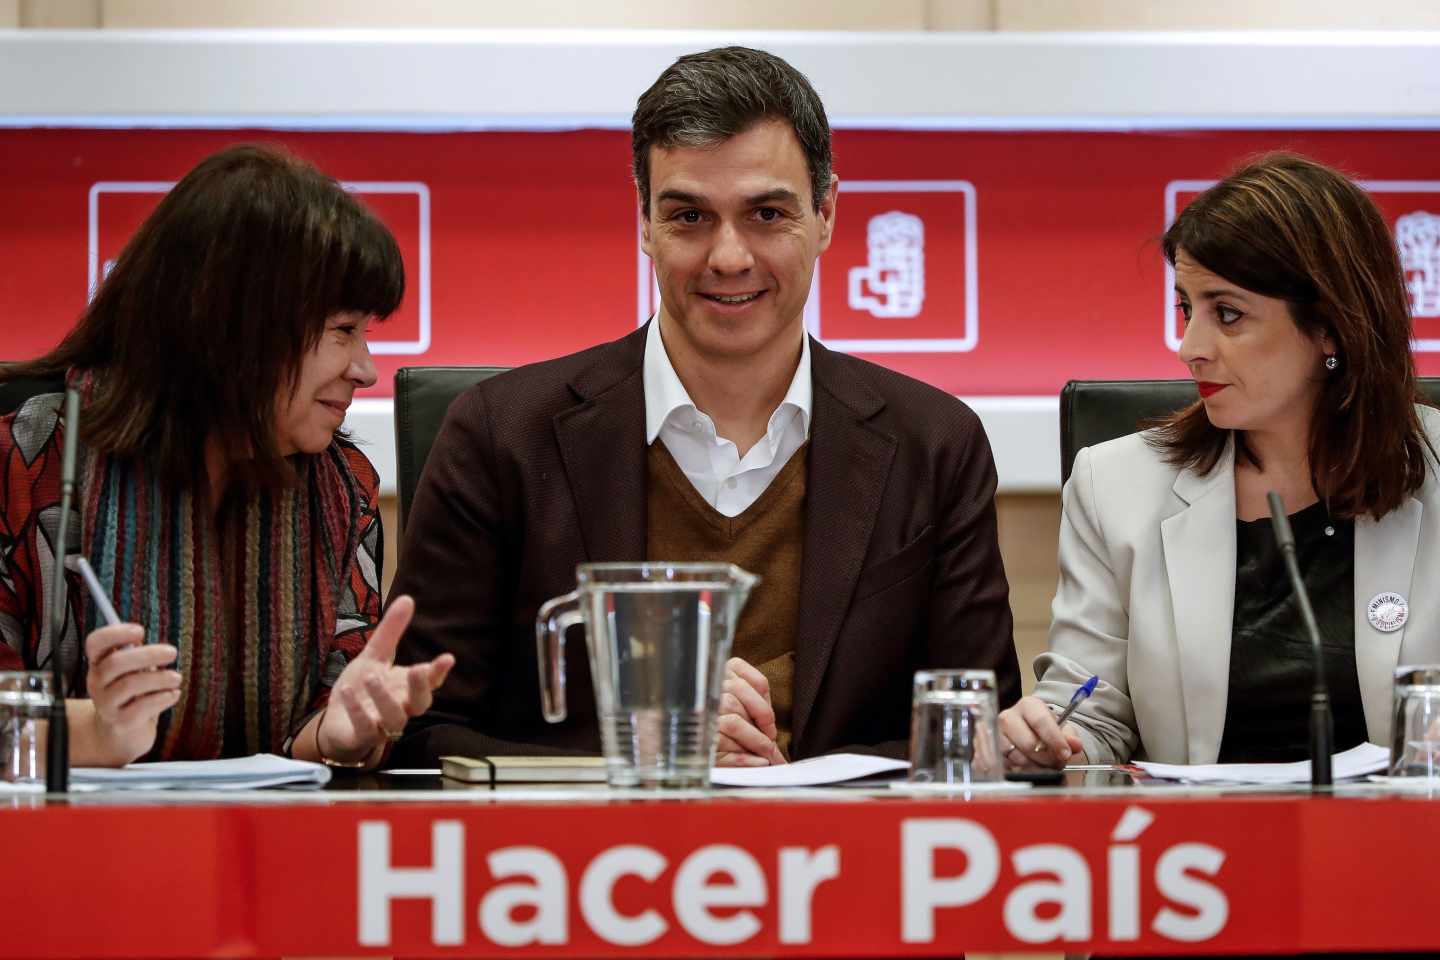 El PSOE votará en contra de la prisión permanente revisable: "Es inconstitucional"